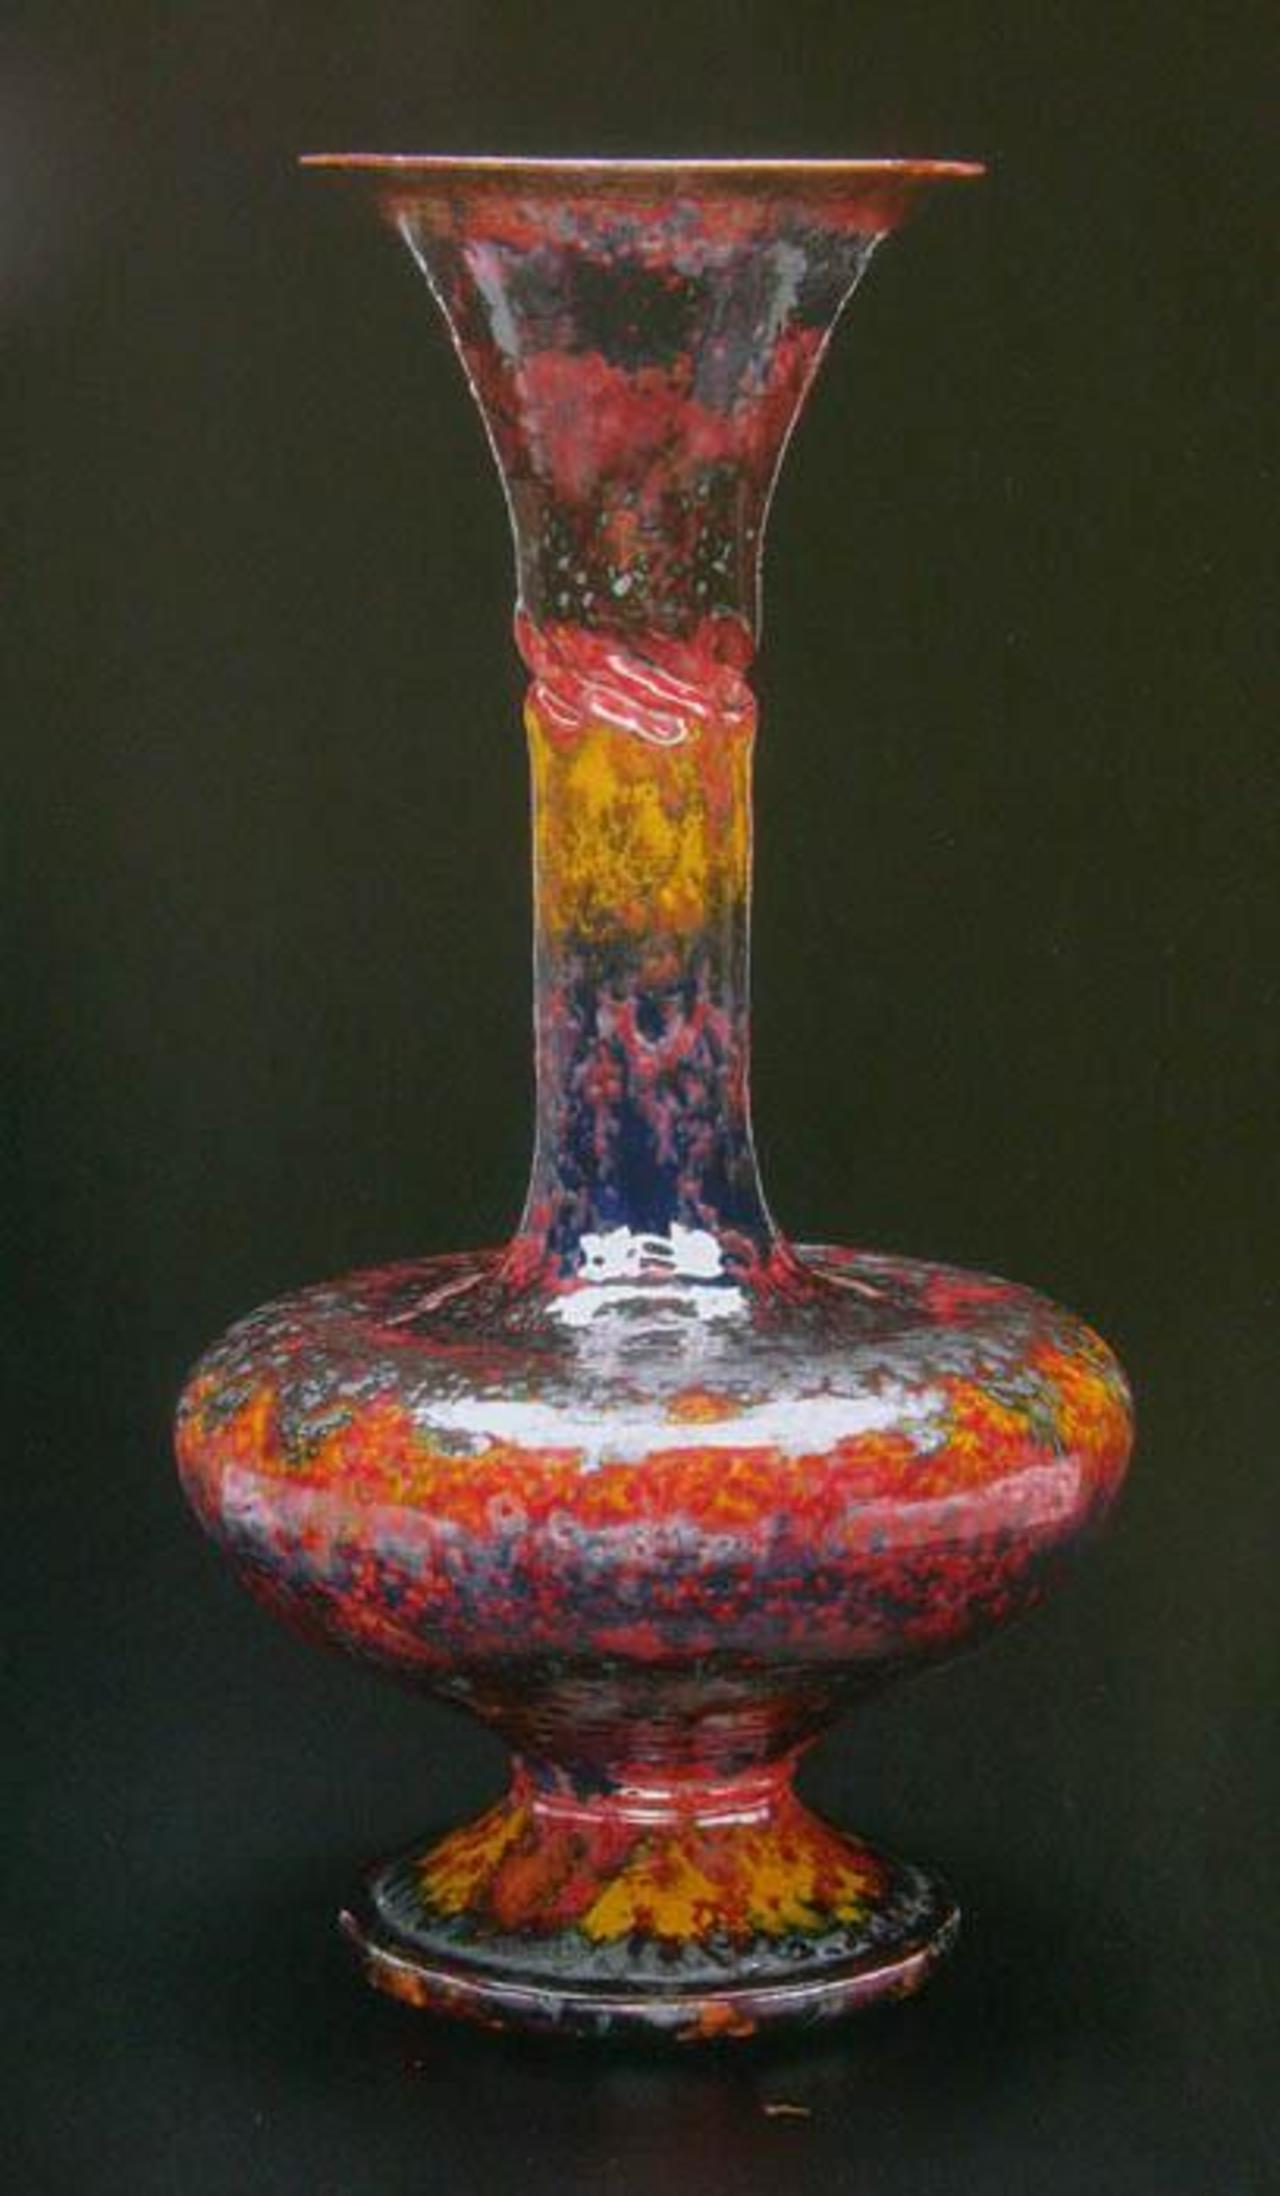 George Ohr, the mad Potter of Biloxi. #ceramics #keramiek #art http://bit.ly/1G2t1zm http://t.co/n46VawAo8l